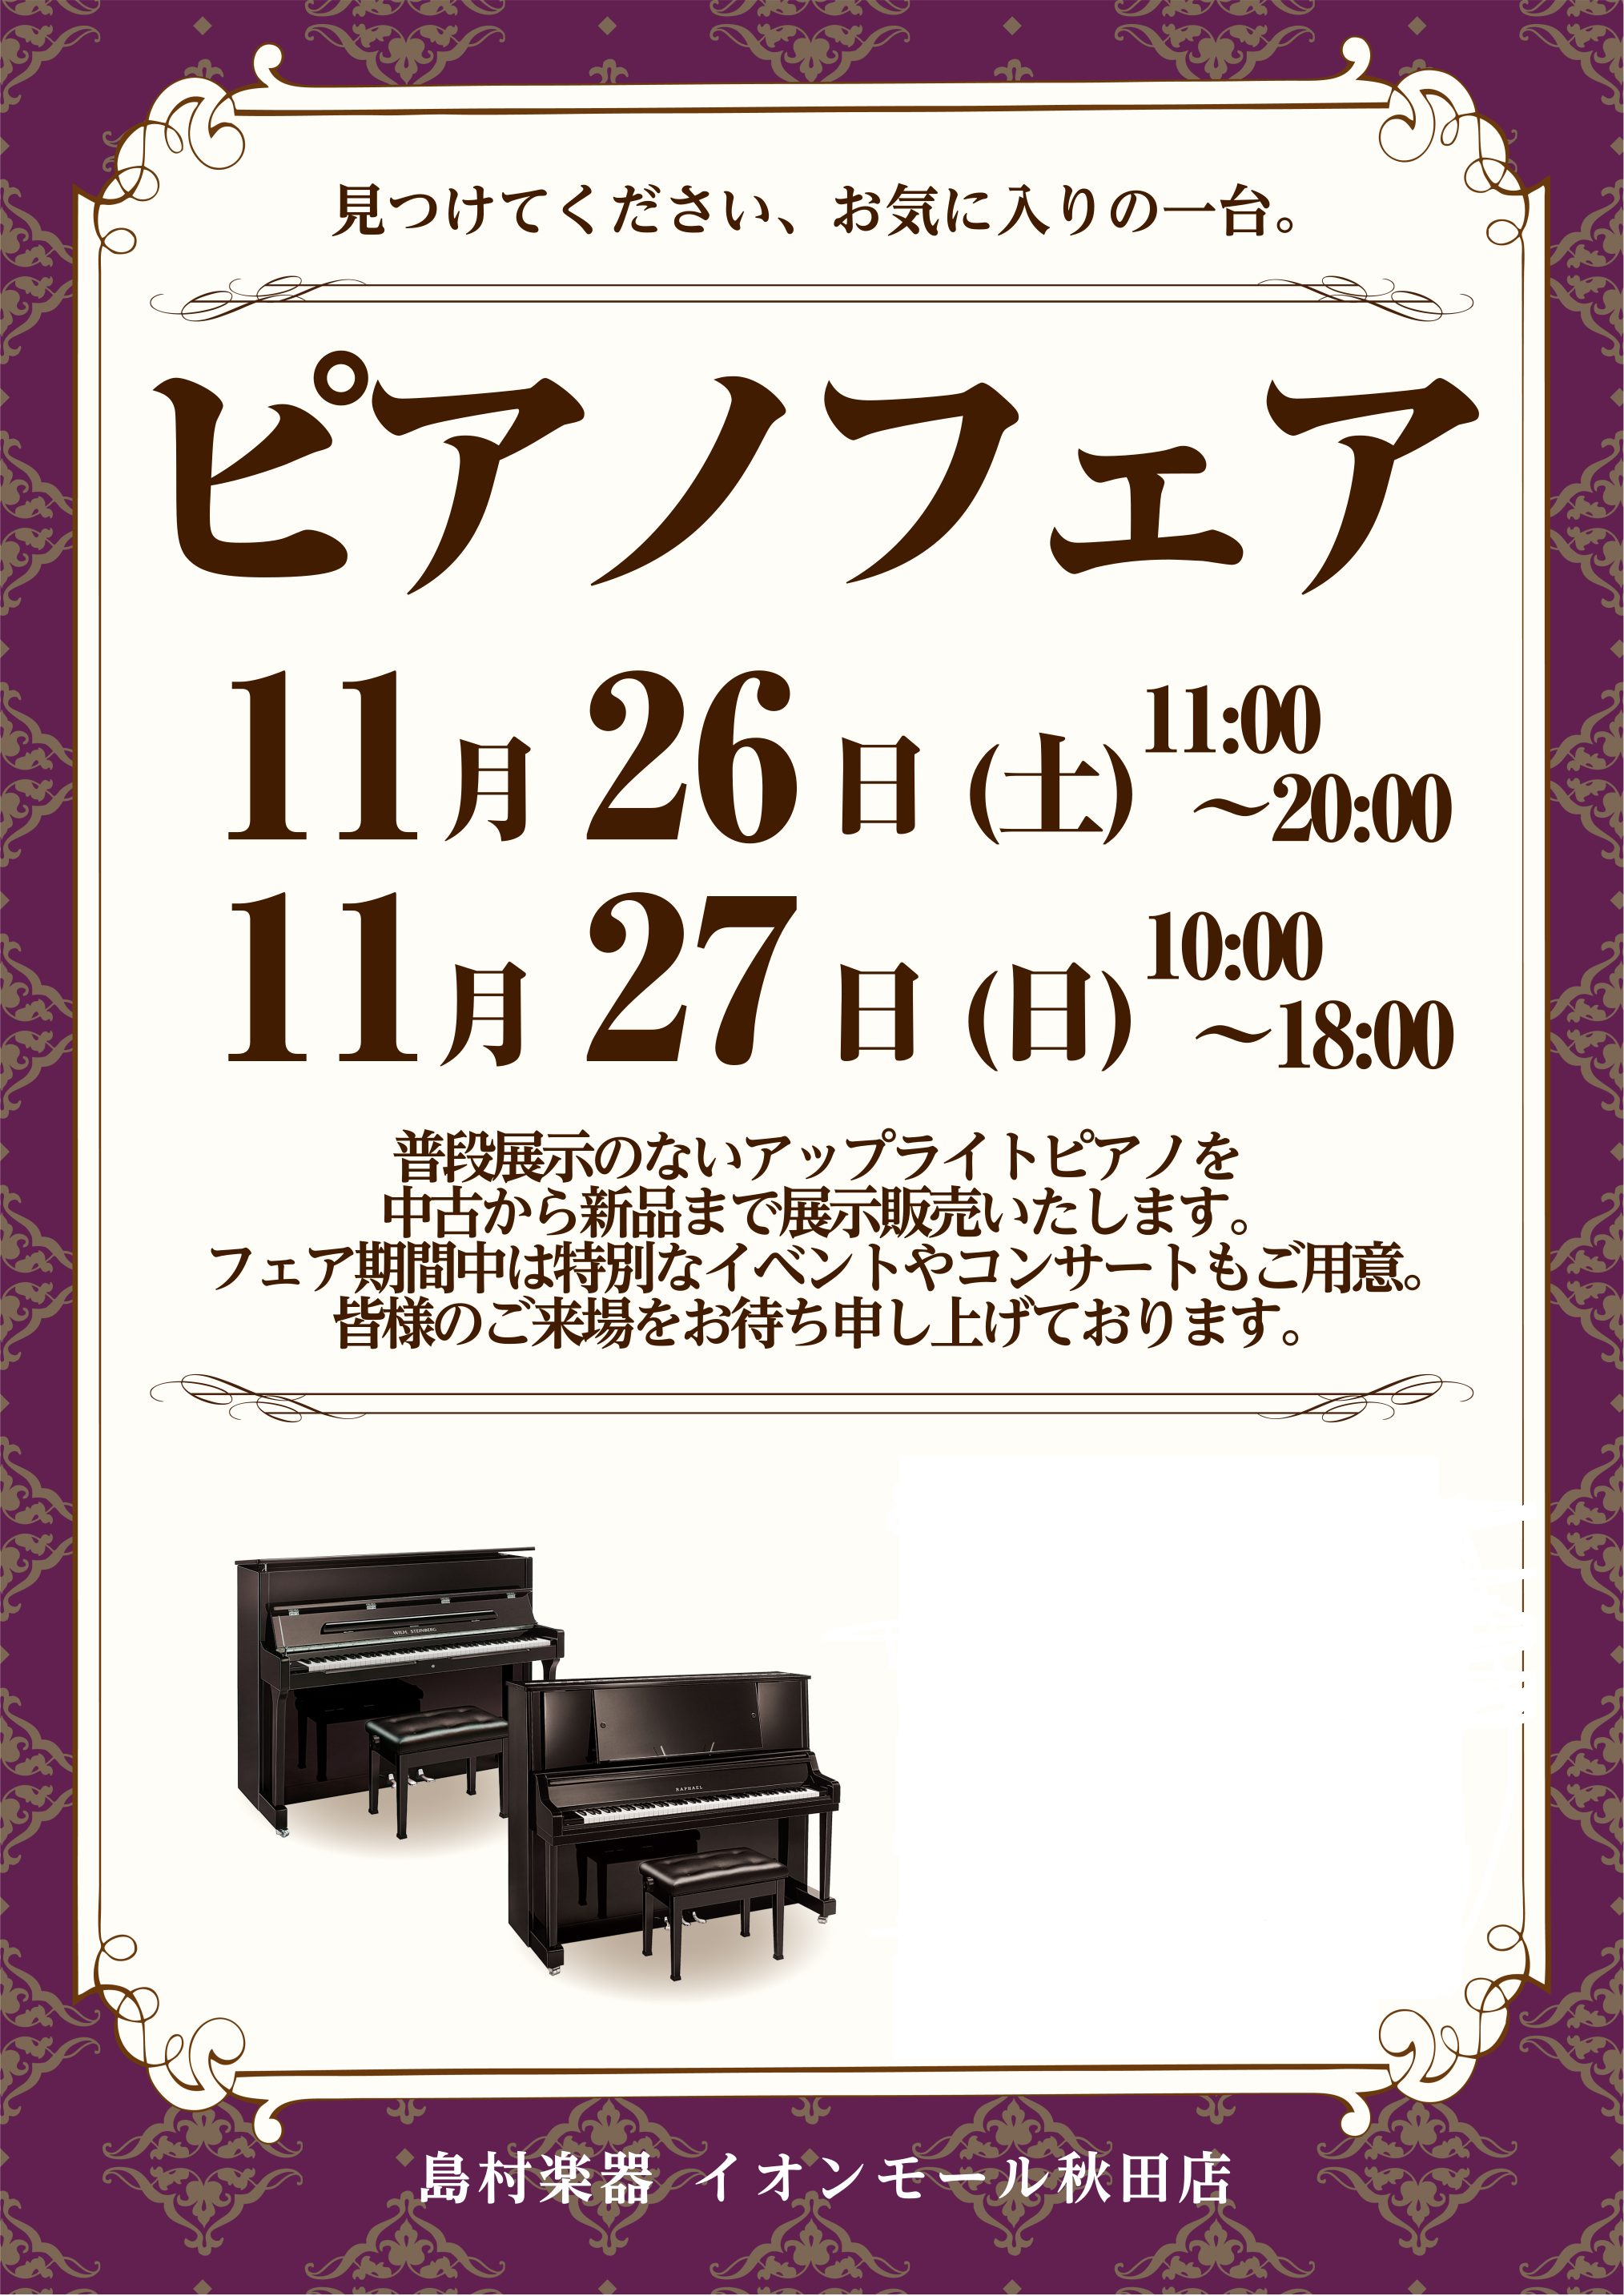 11/26(土)・11/27(日)の期間、ピアノフェアを開催いたします。 ピアノの展示だけでなくイベントも開催予定です。 情報は随時更新いたします。 CONTENTS展示予定ピアノフェア期間中のイベント展示予定ピアノ アップライトピアノ 中古アップライトピアノ フェア期間中のイベント 11/26(土 […]